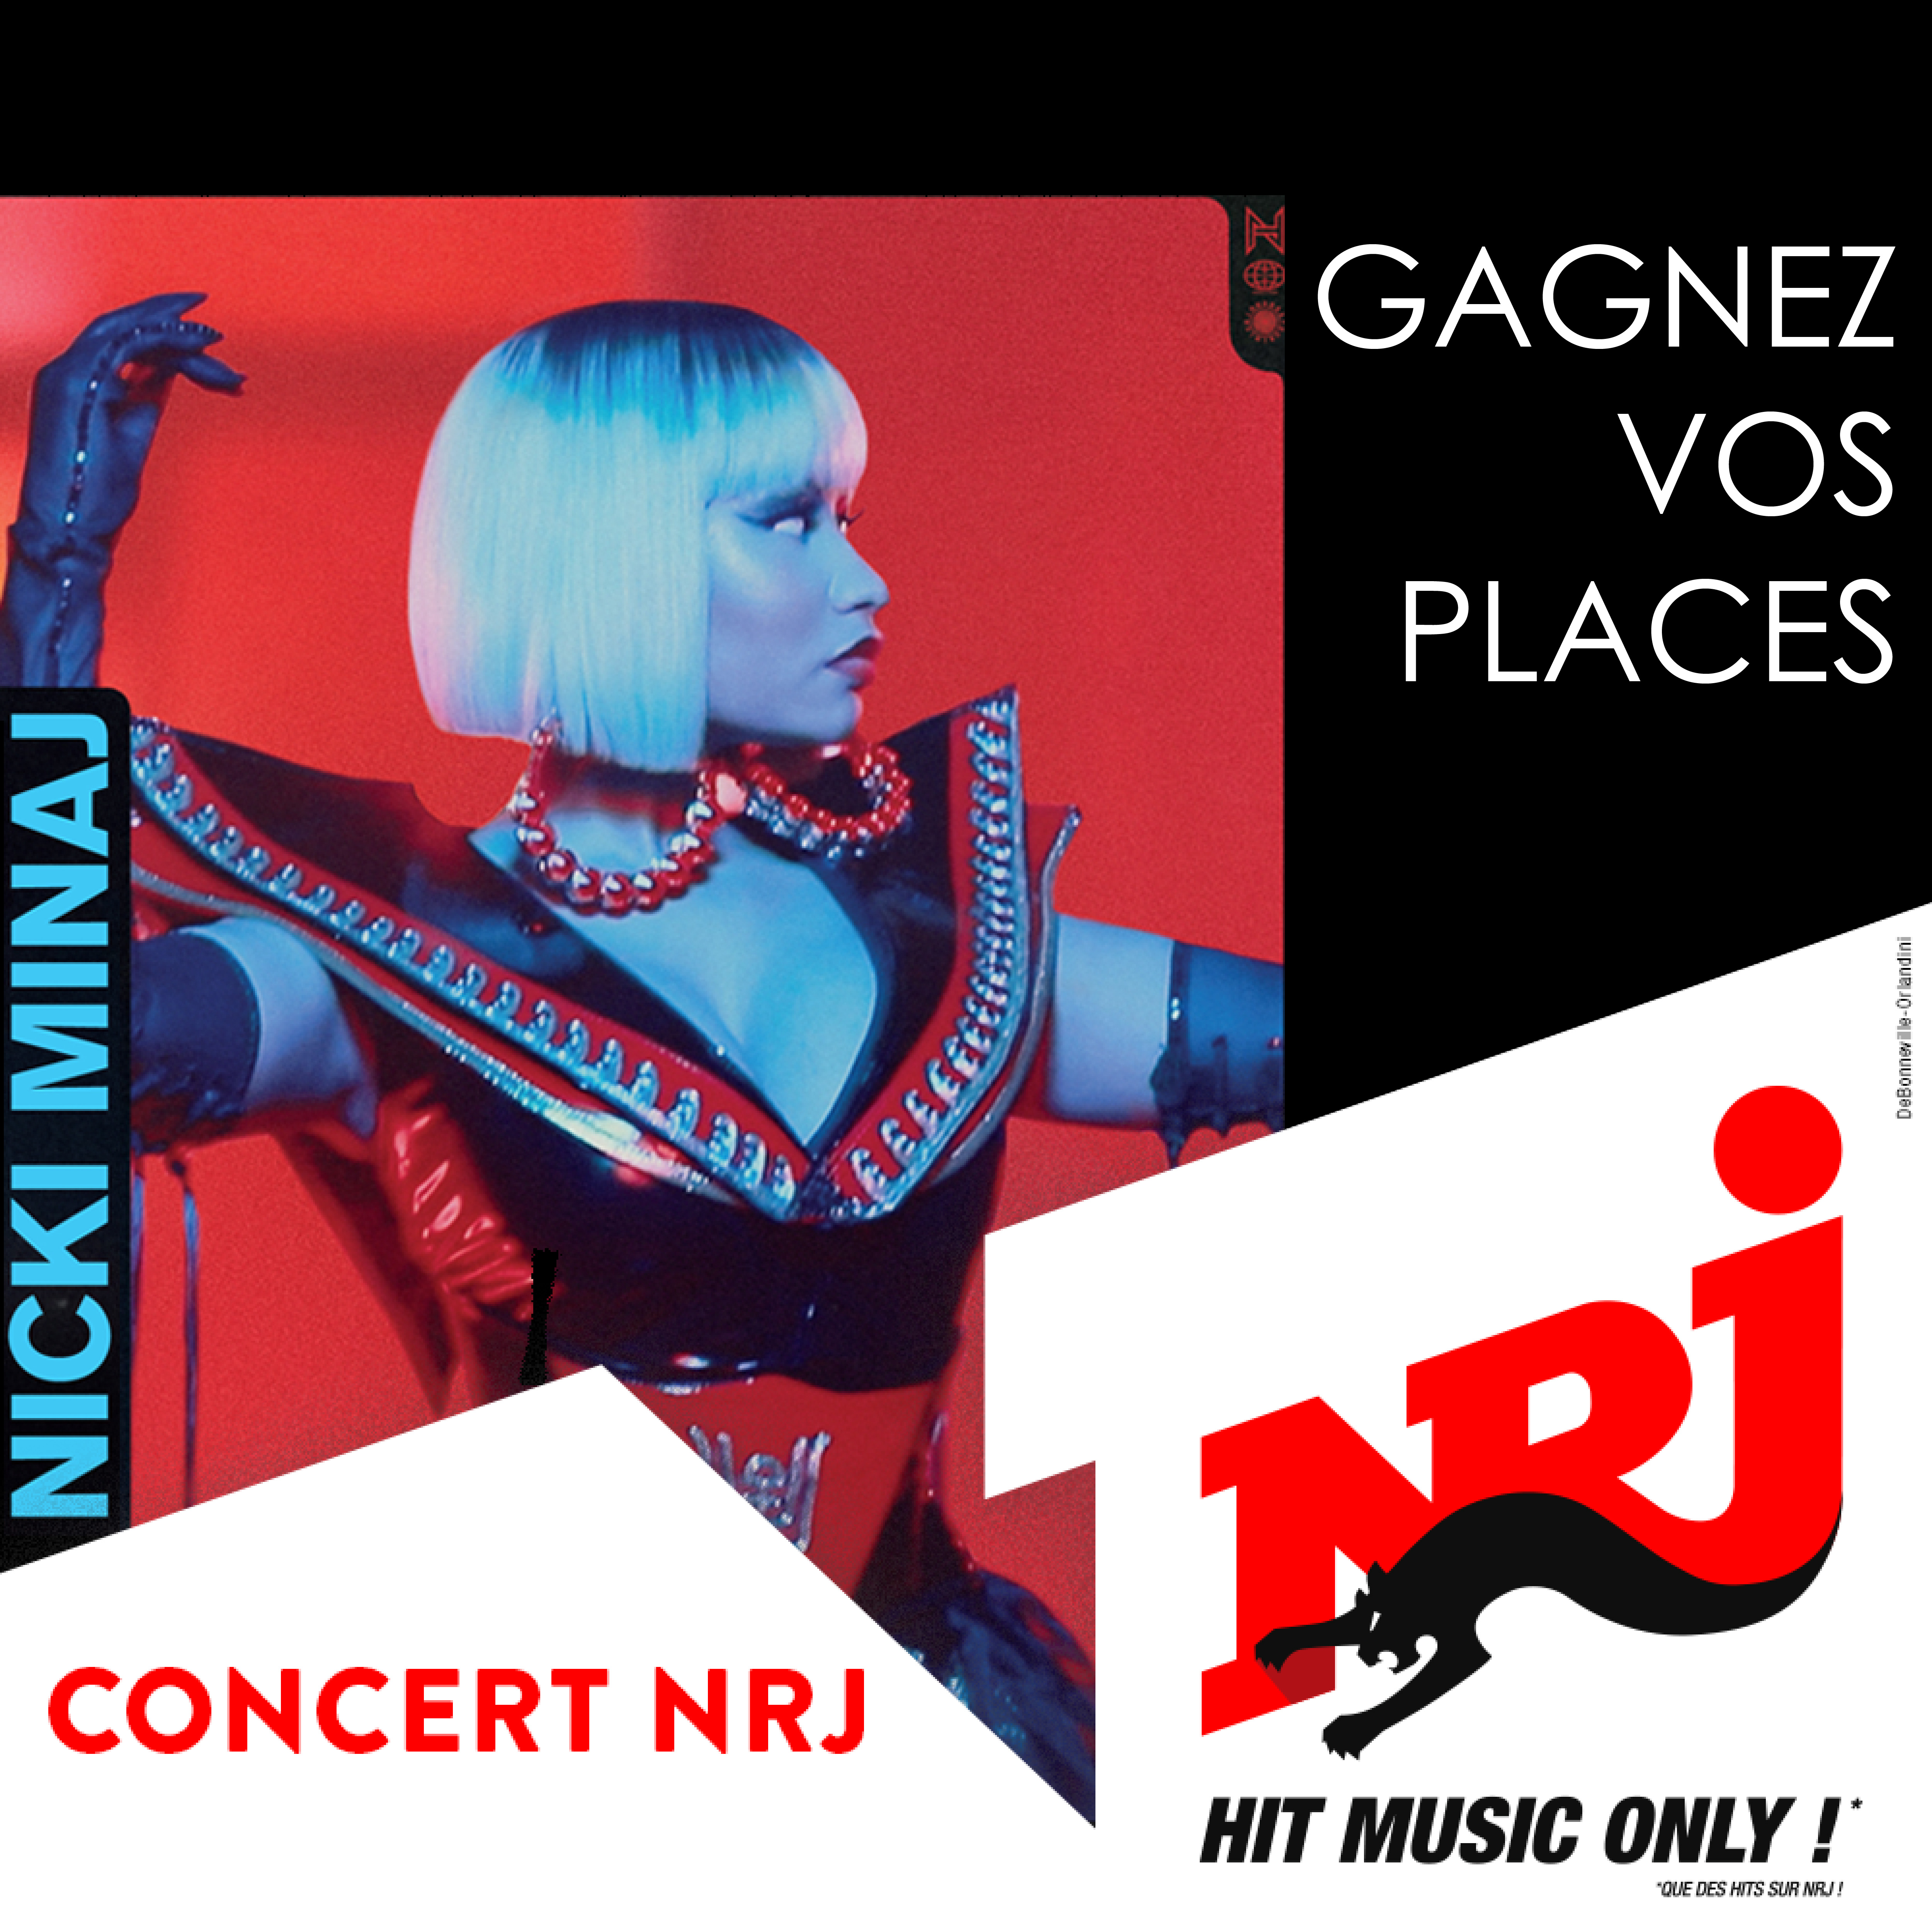 Les Bons Plans Bordeaux vous offrent vos places pour le concert de Nicki Minaj à l'Arkea Aréna de Bordeaux